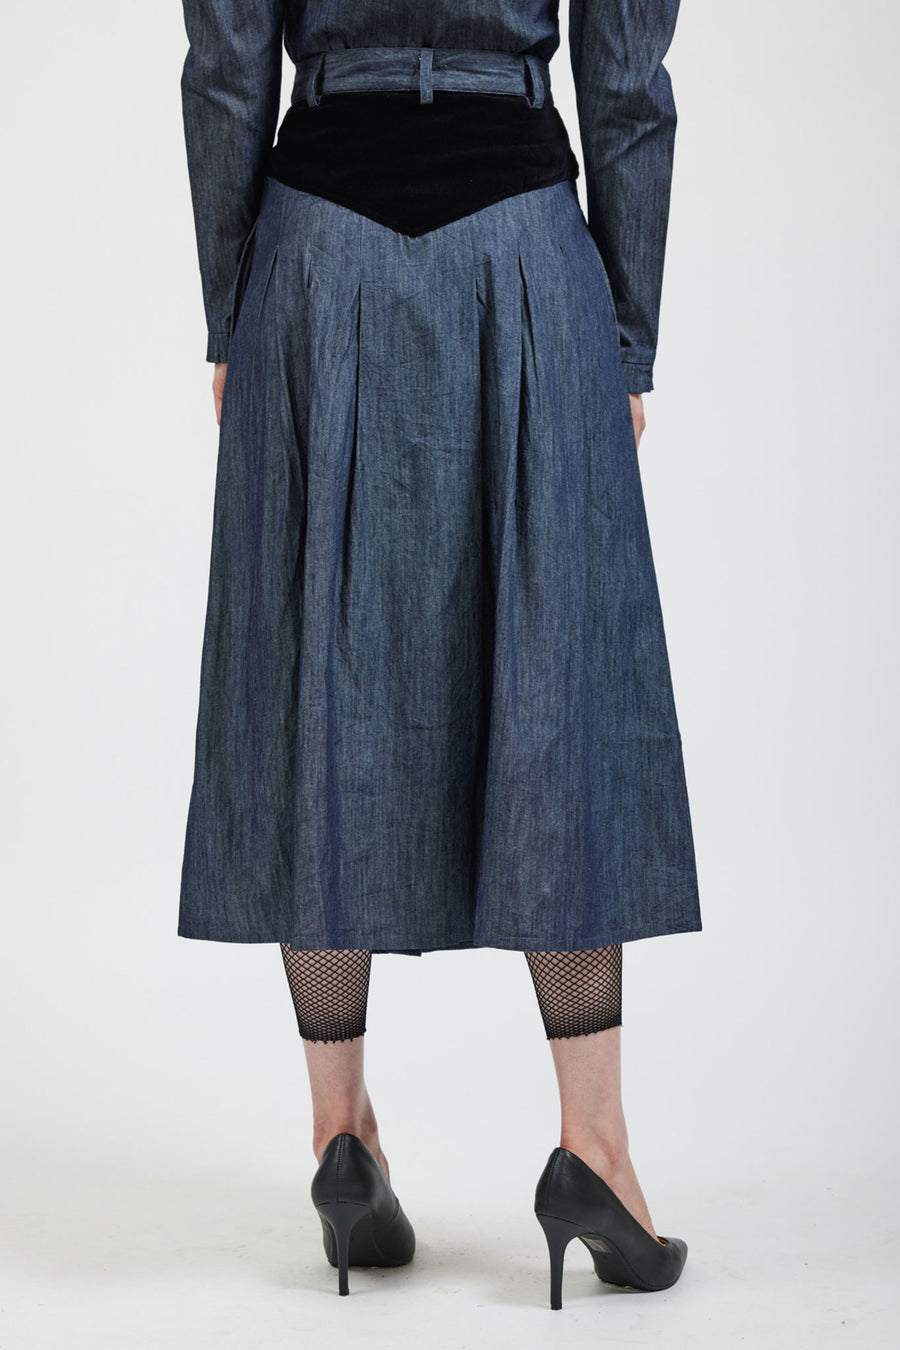 Black Contrast Stitch Bralet + Skirt Denim Co-ord - Divina